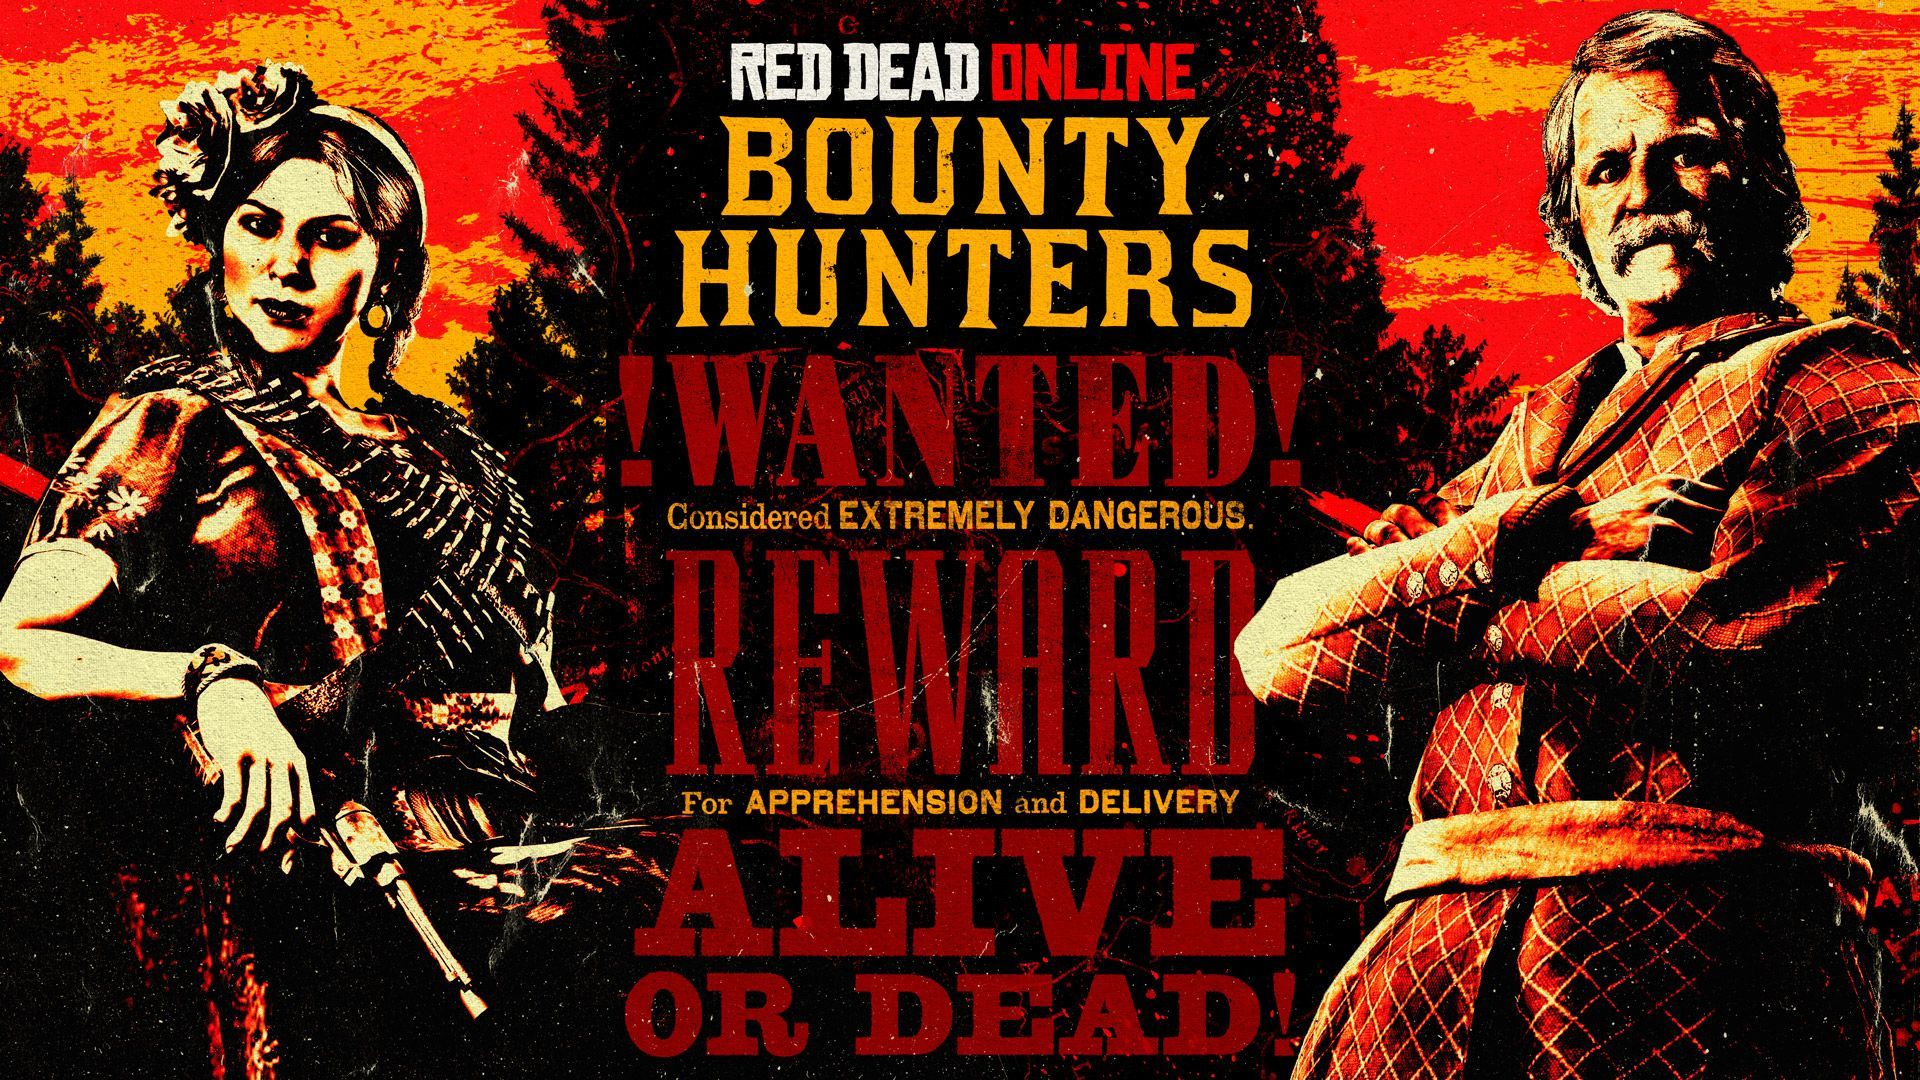 Semaine chasseur de primes dans Red Dead Online